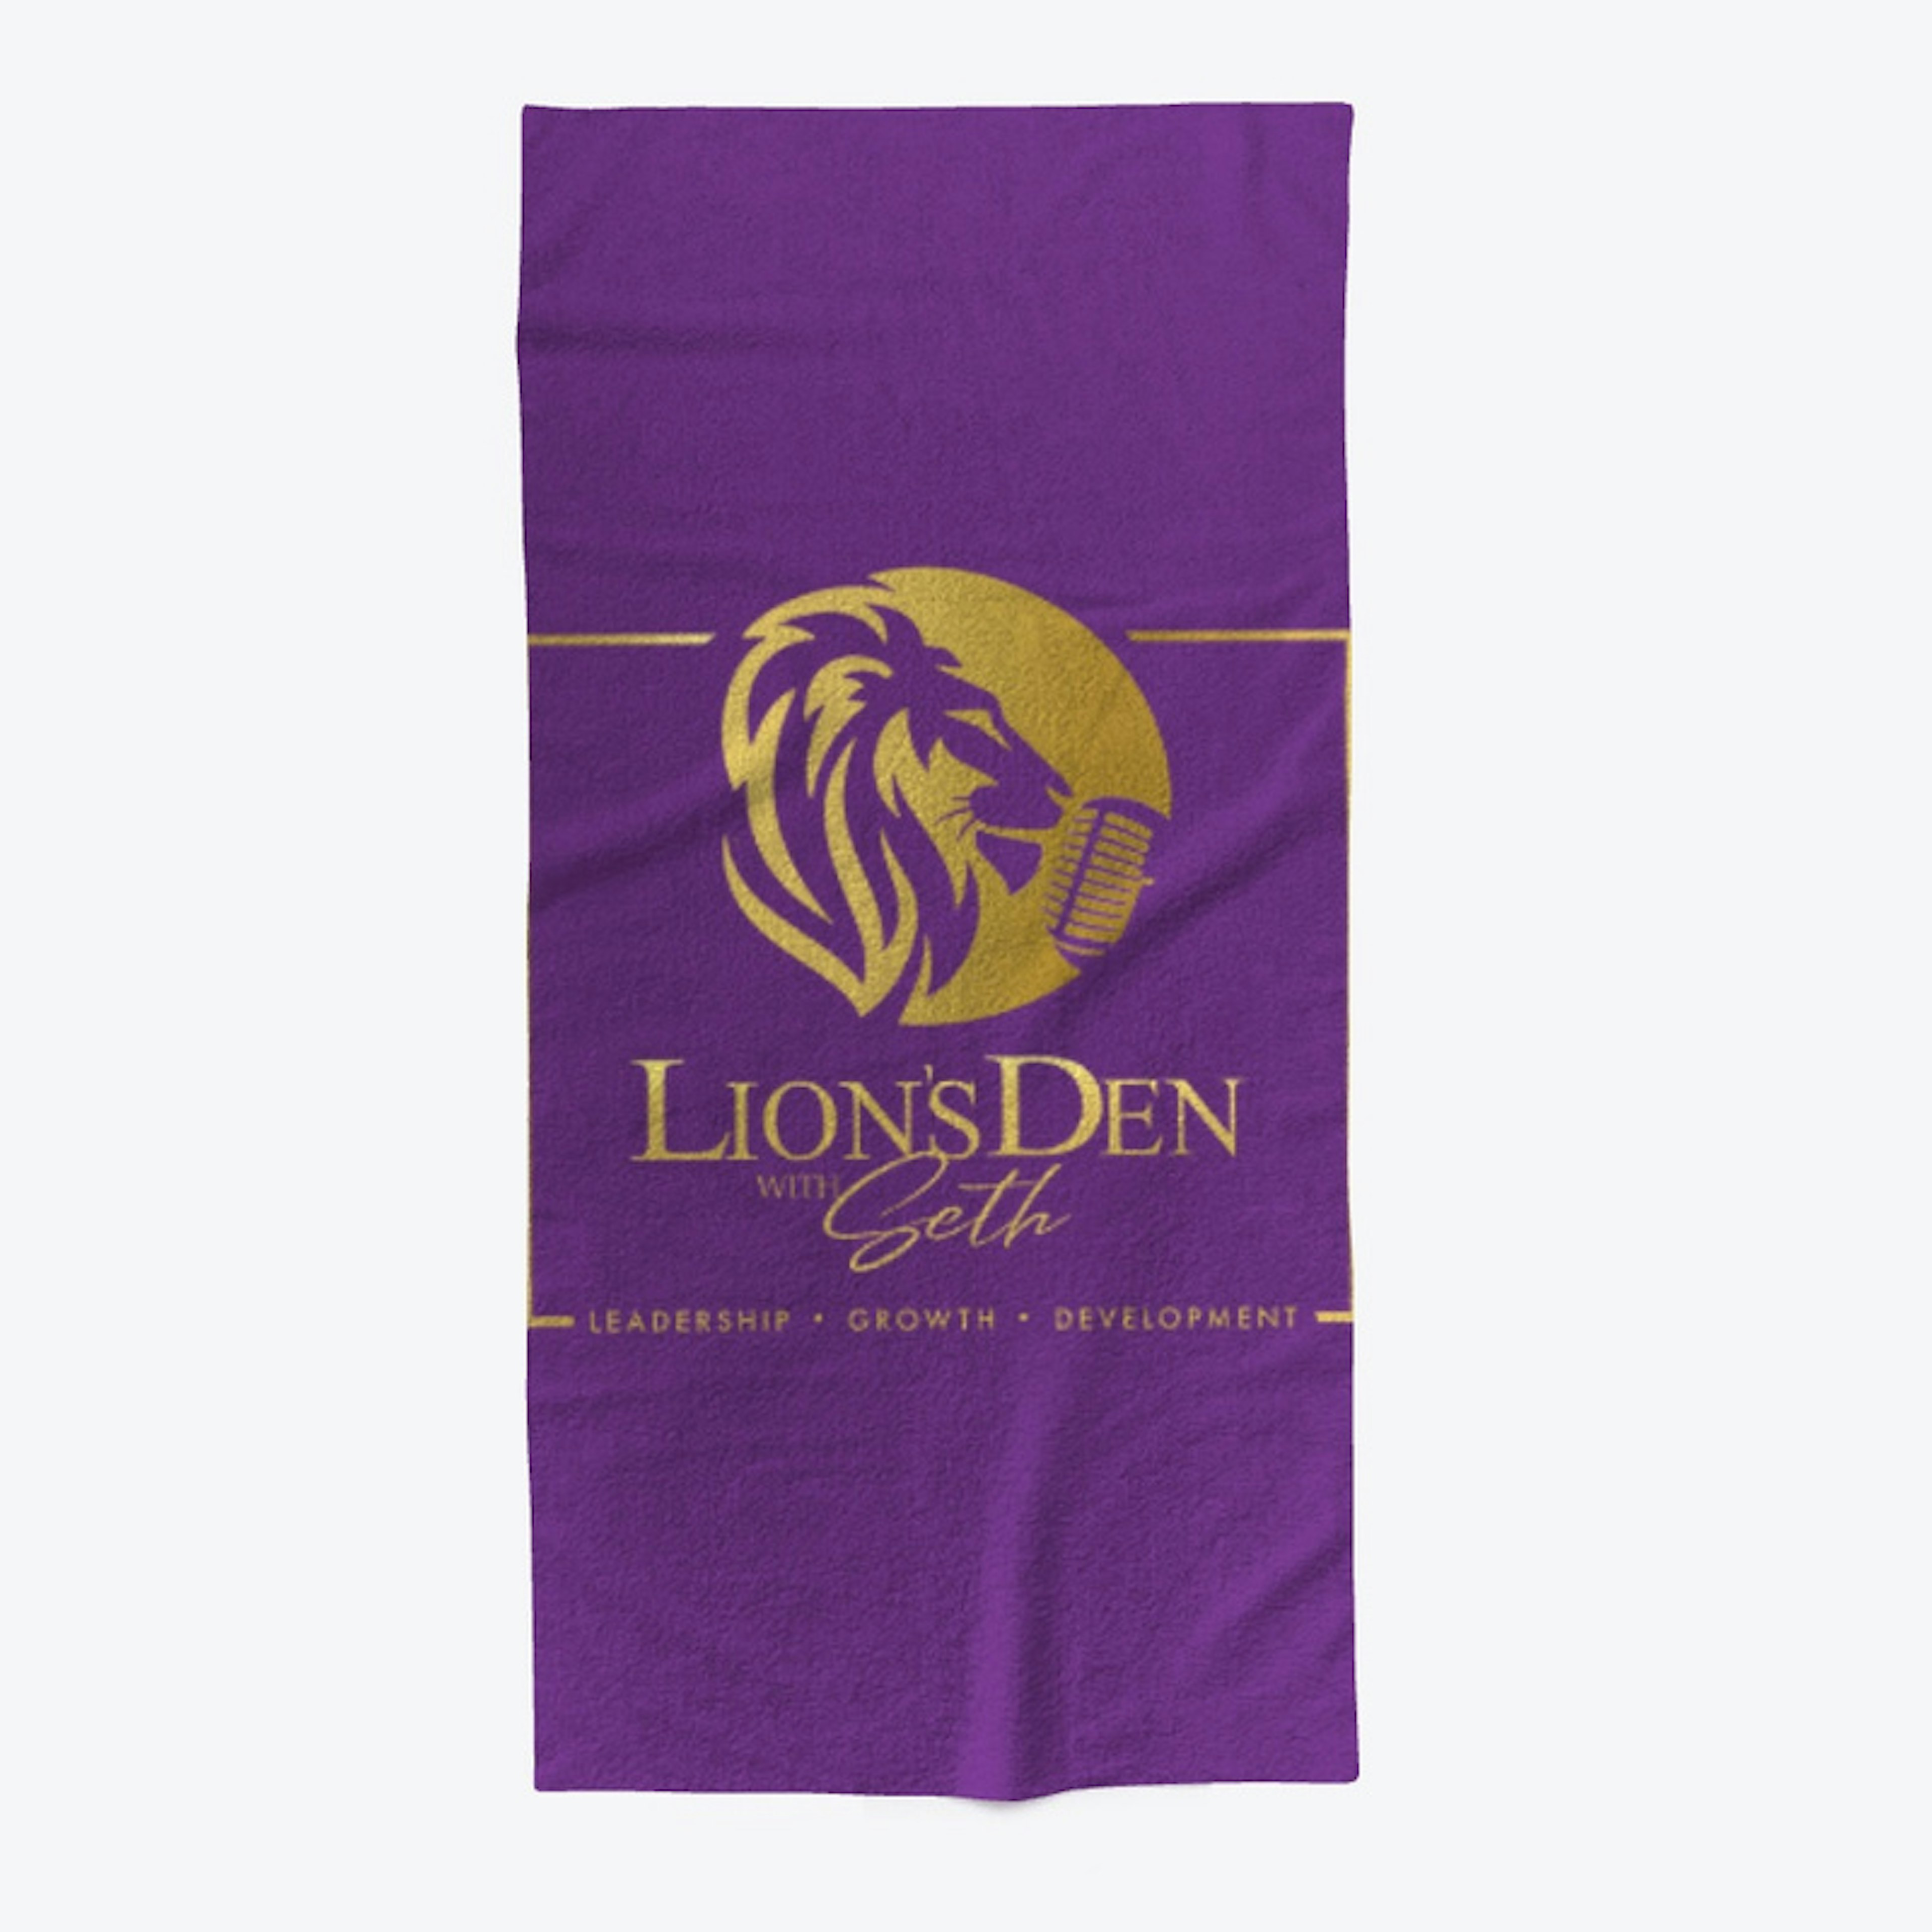 Lions Den Merchandise 